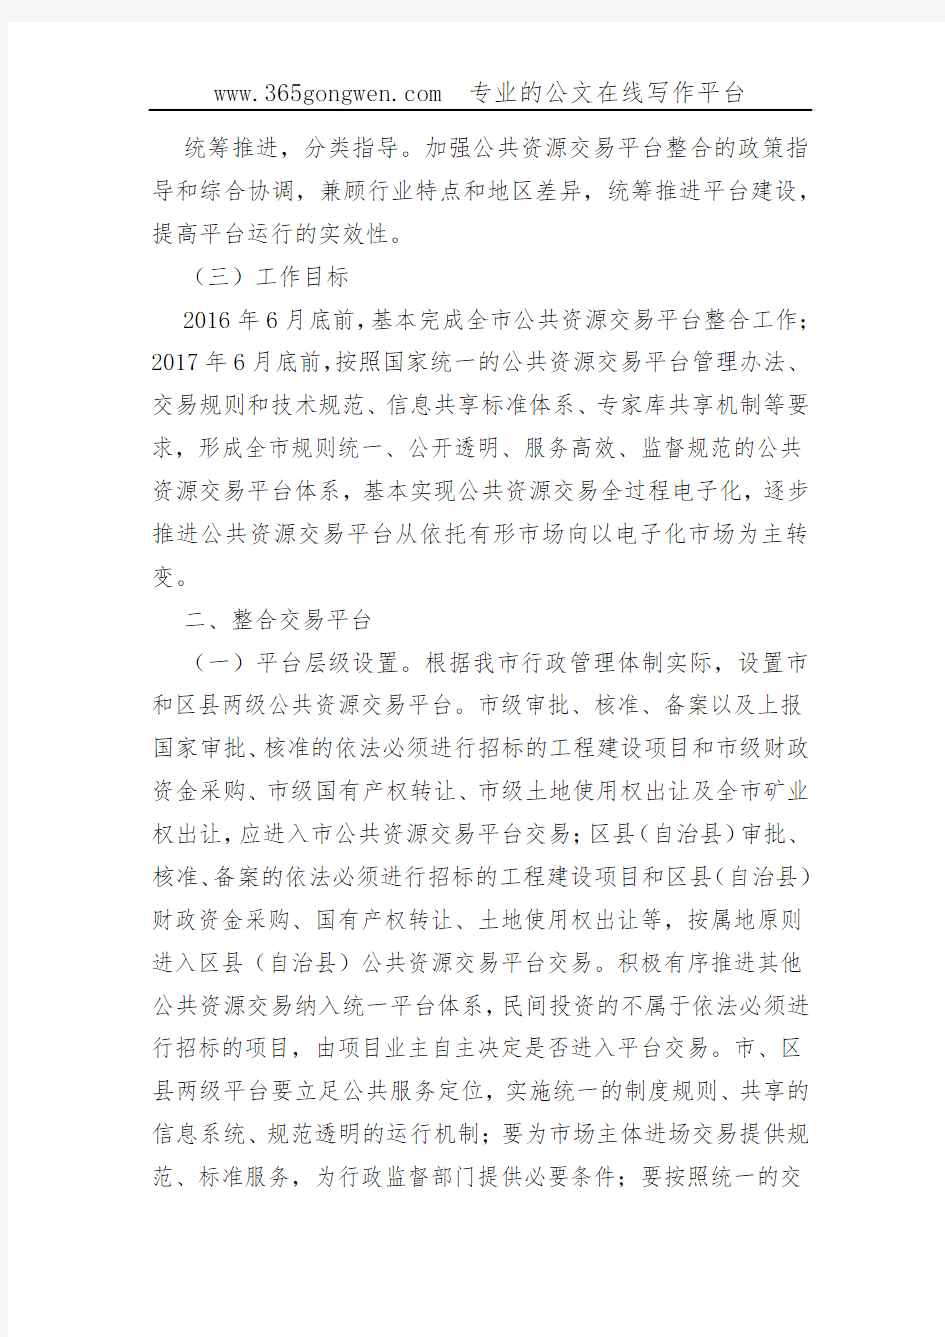 【发改方案】重庆市整合建立统一的公共资源交易平台实施方案